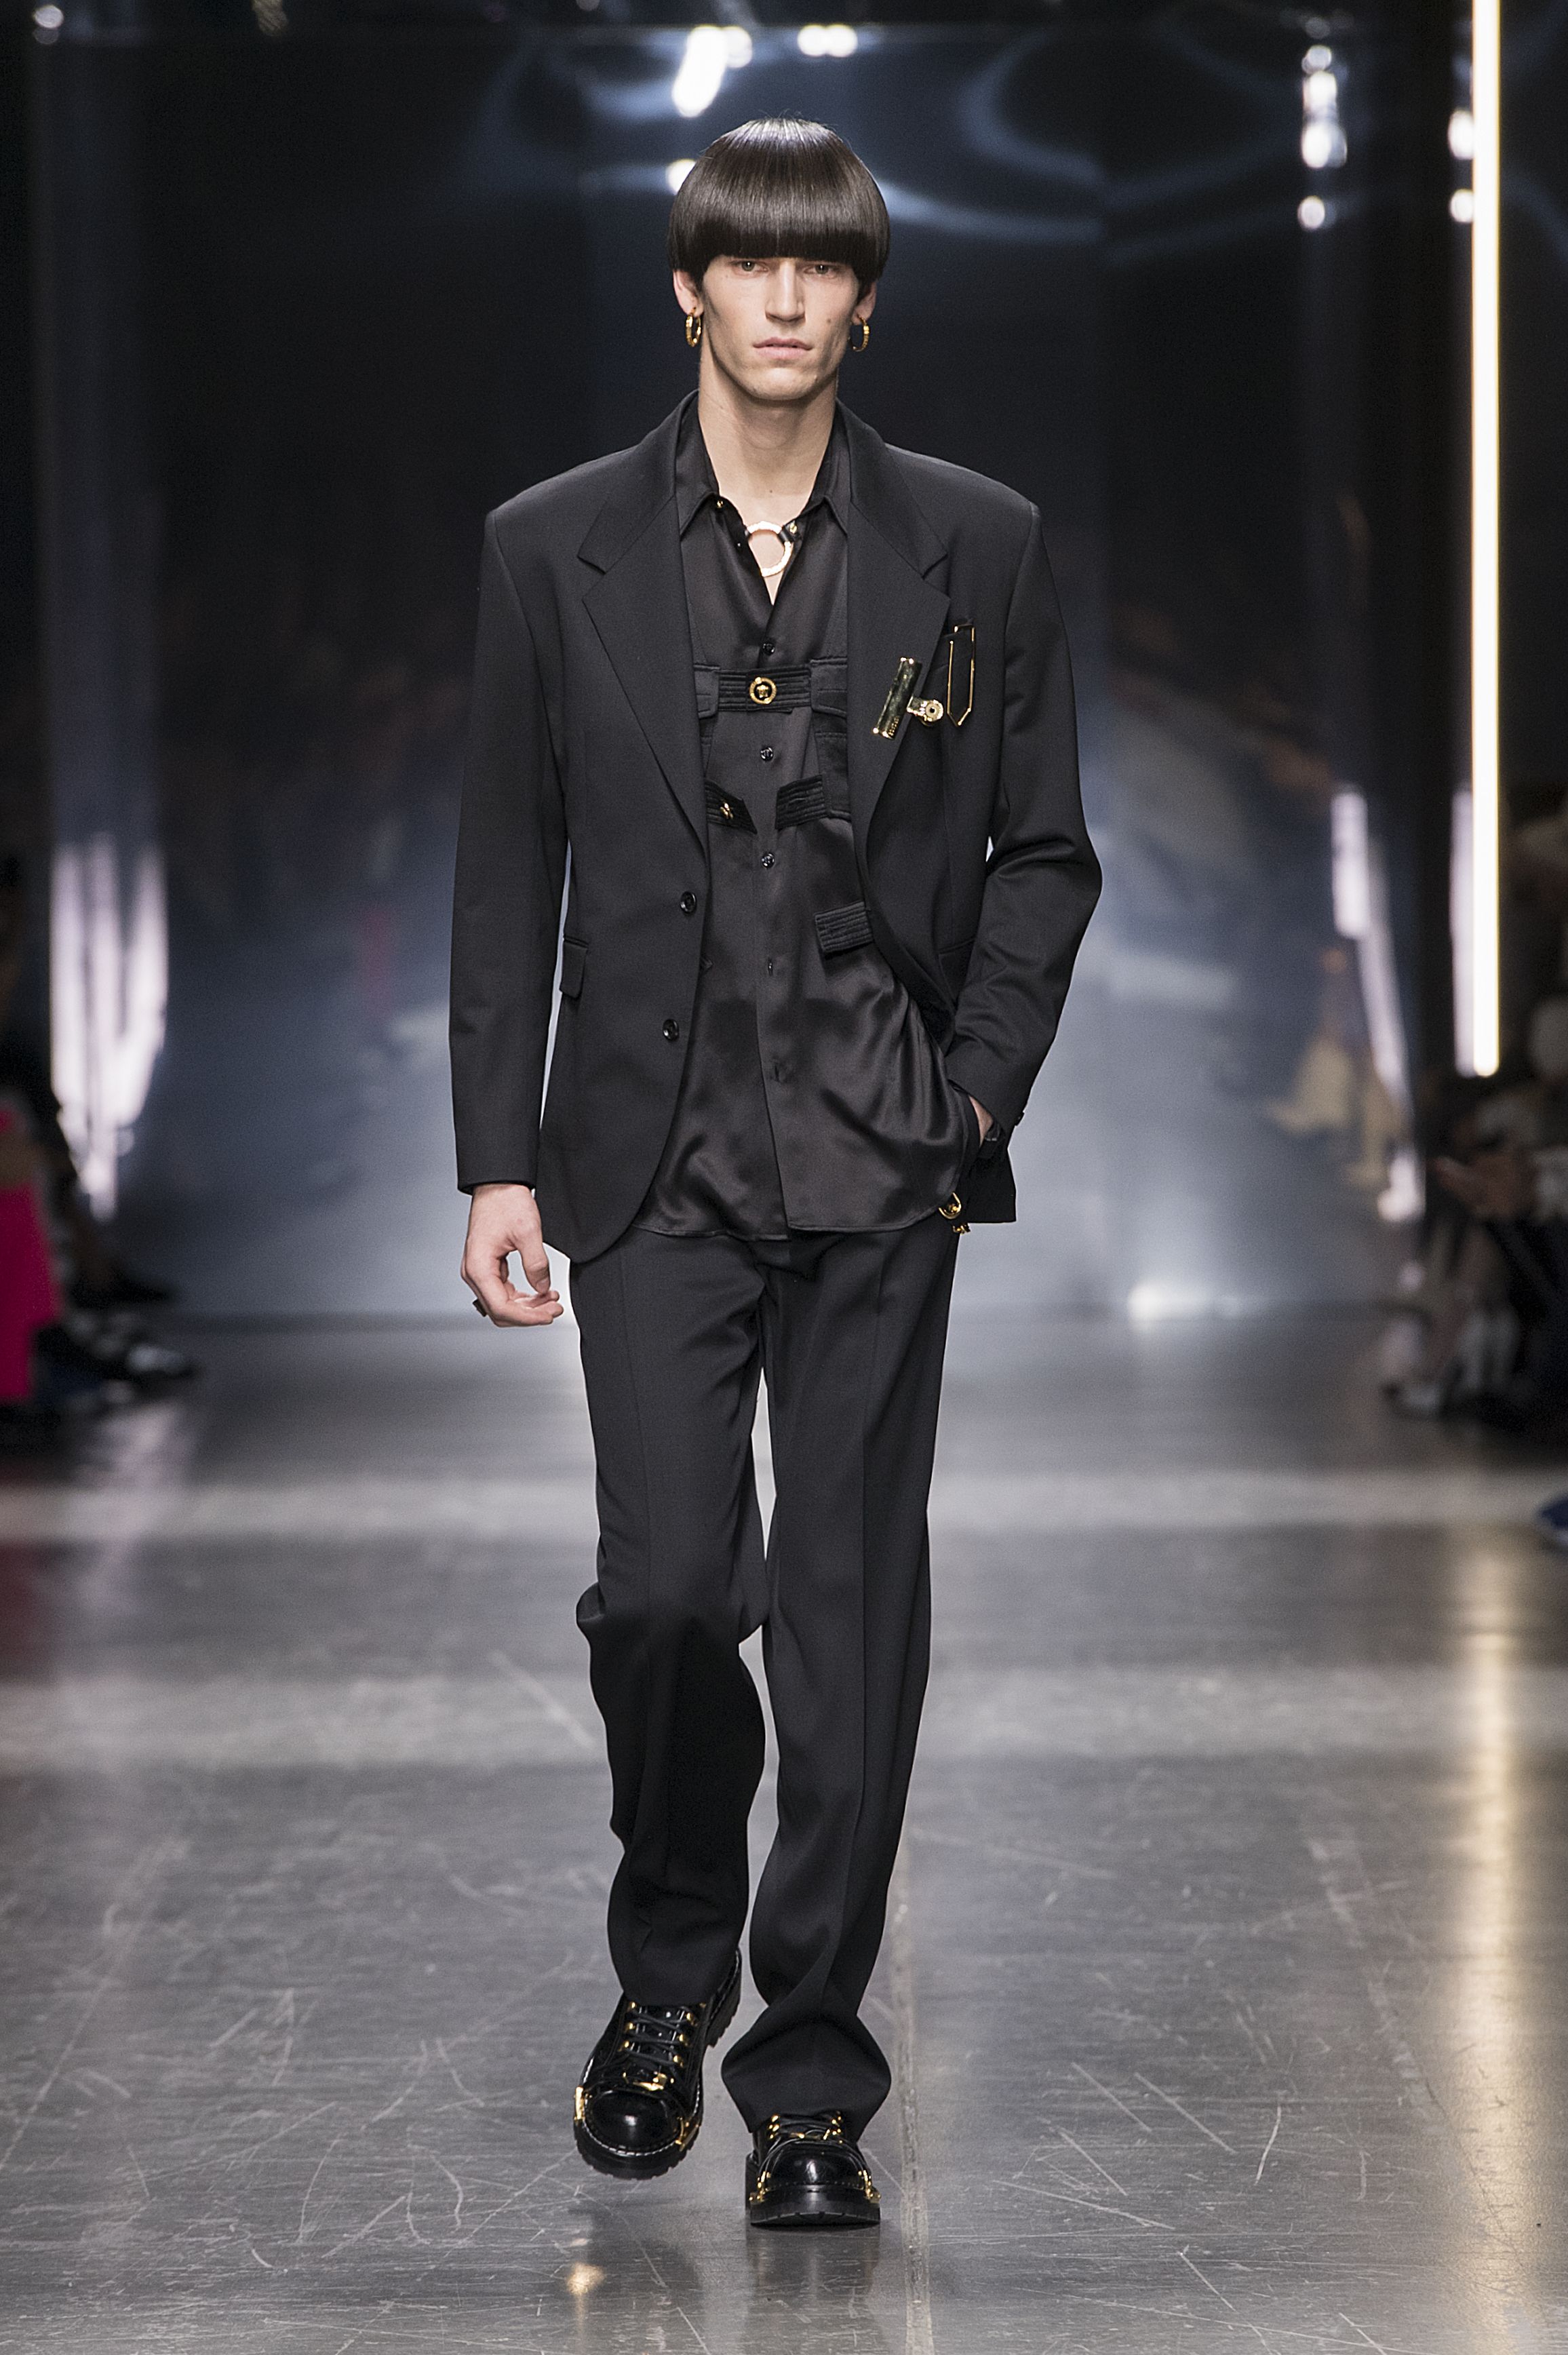 versace men's suits collection